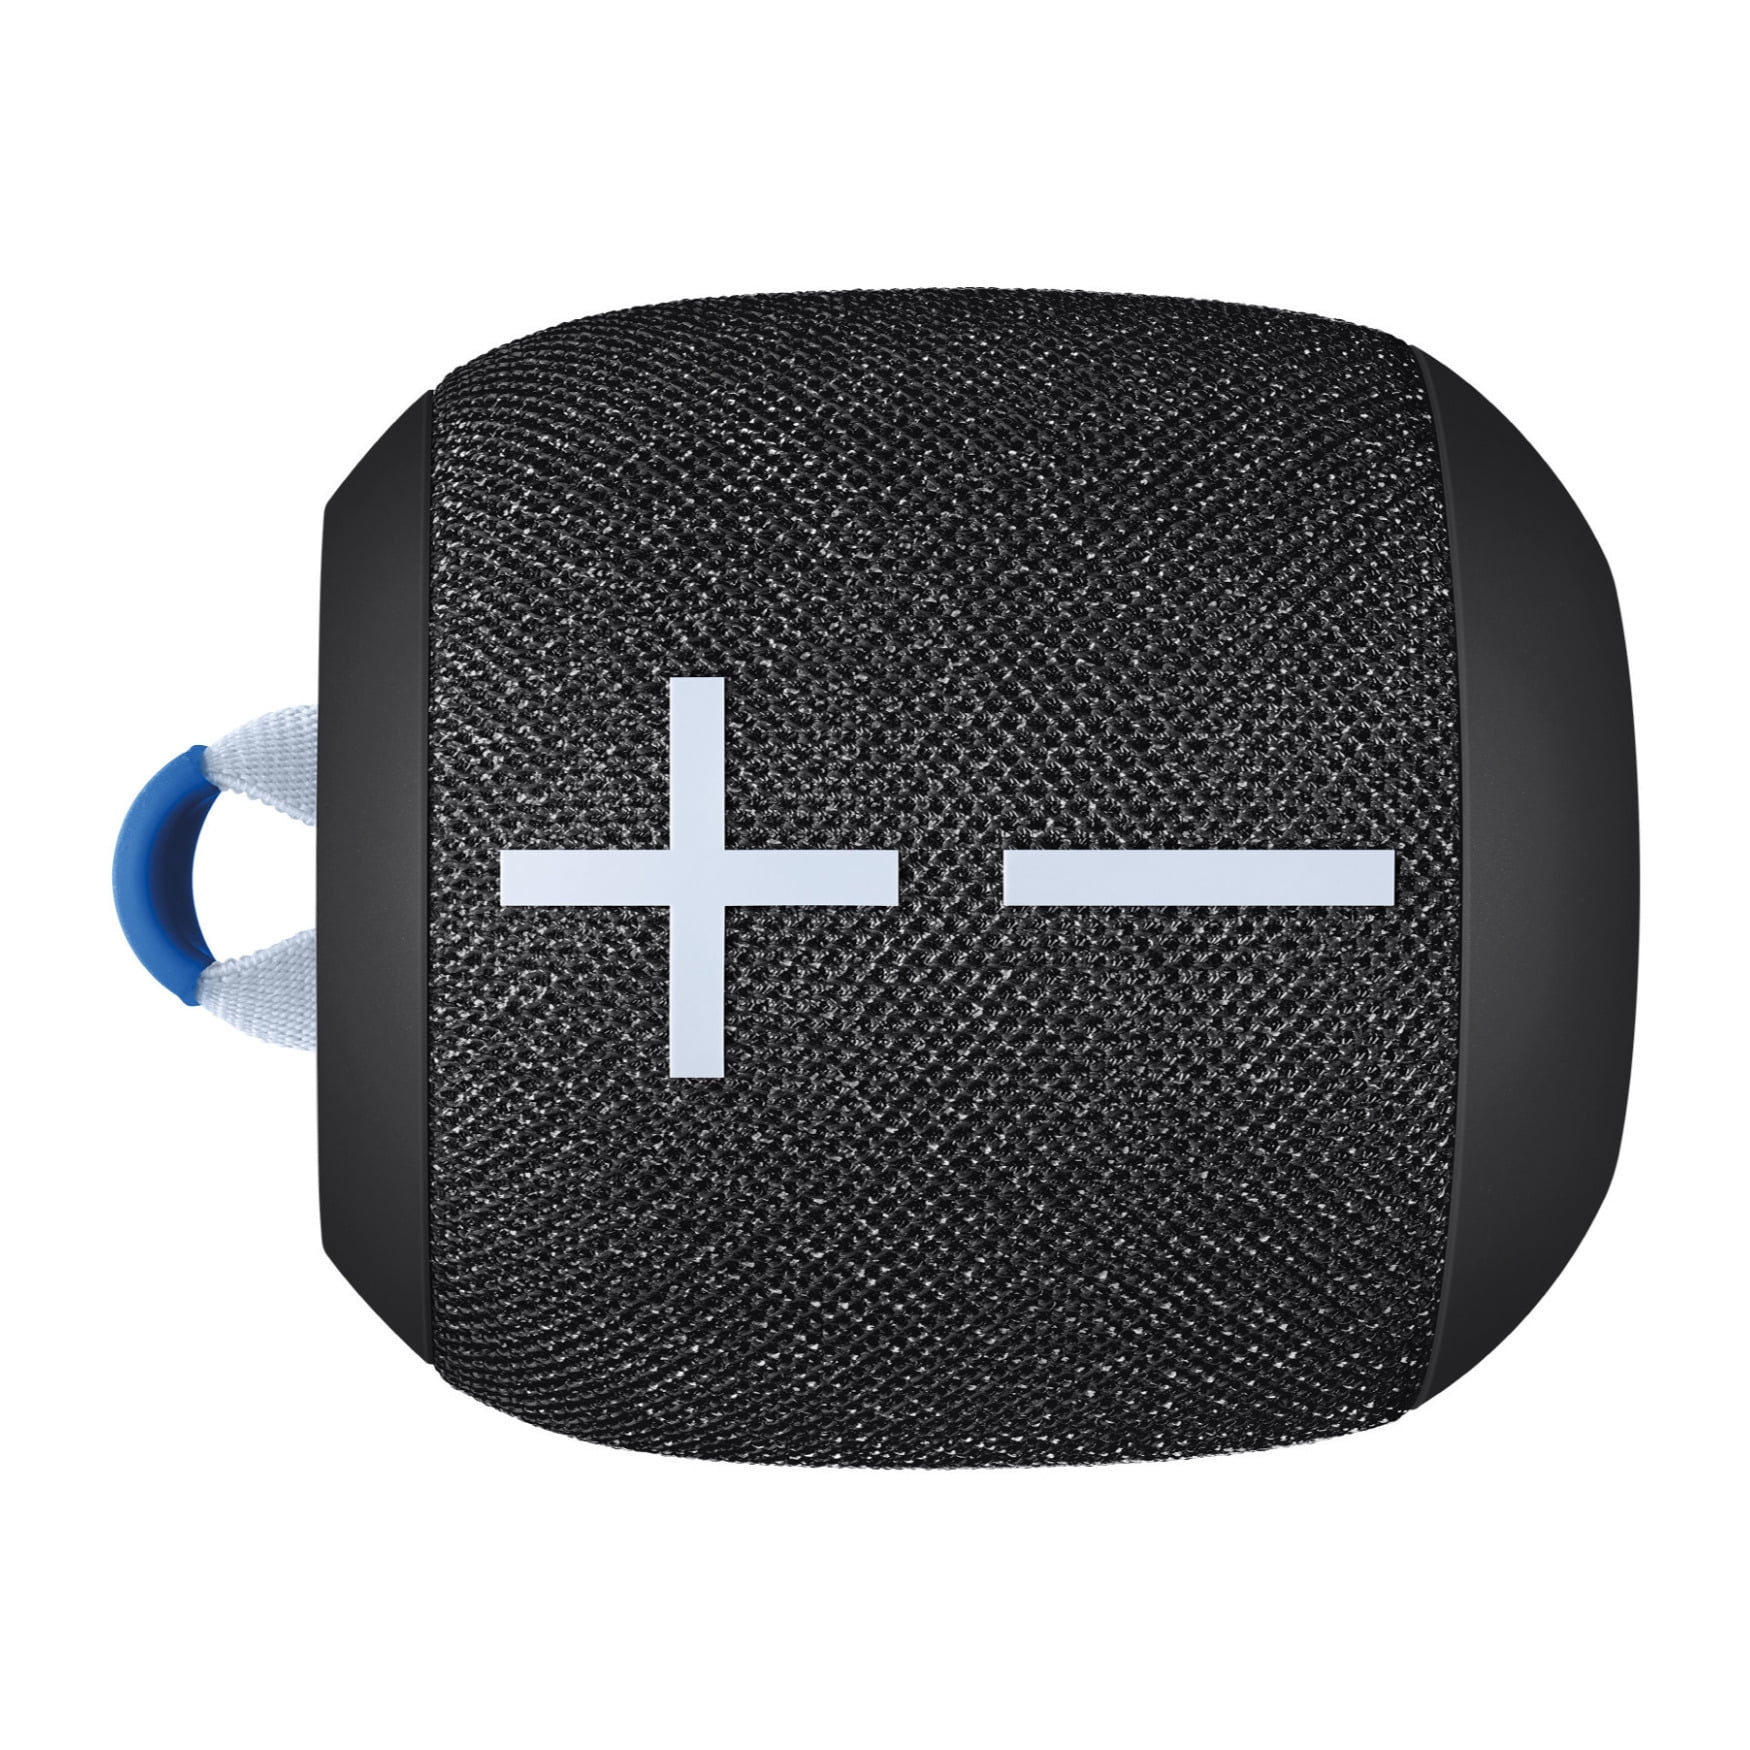 Ultimate Ears WONDERBOOM 3 Bluetooth Speaker (Joyous Bright) with Case 